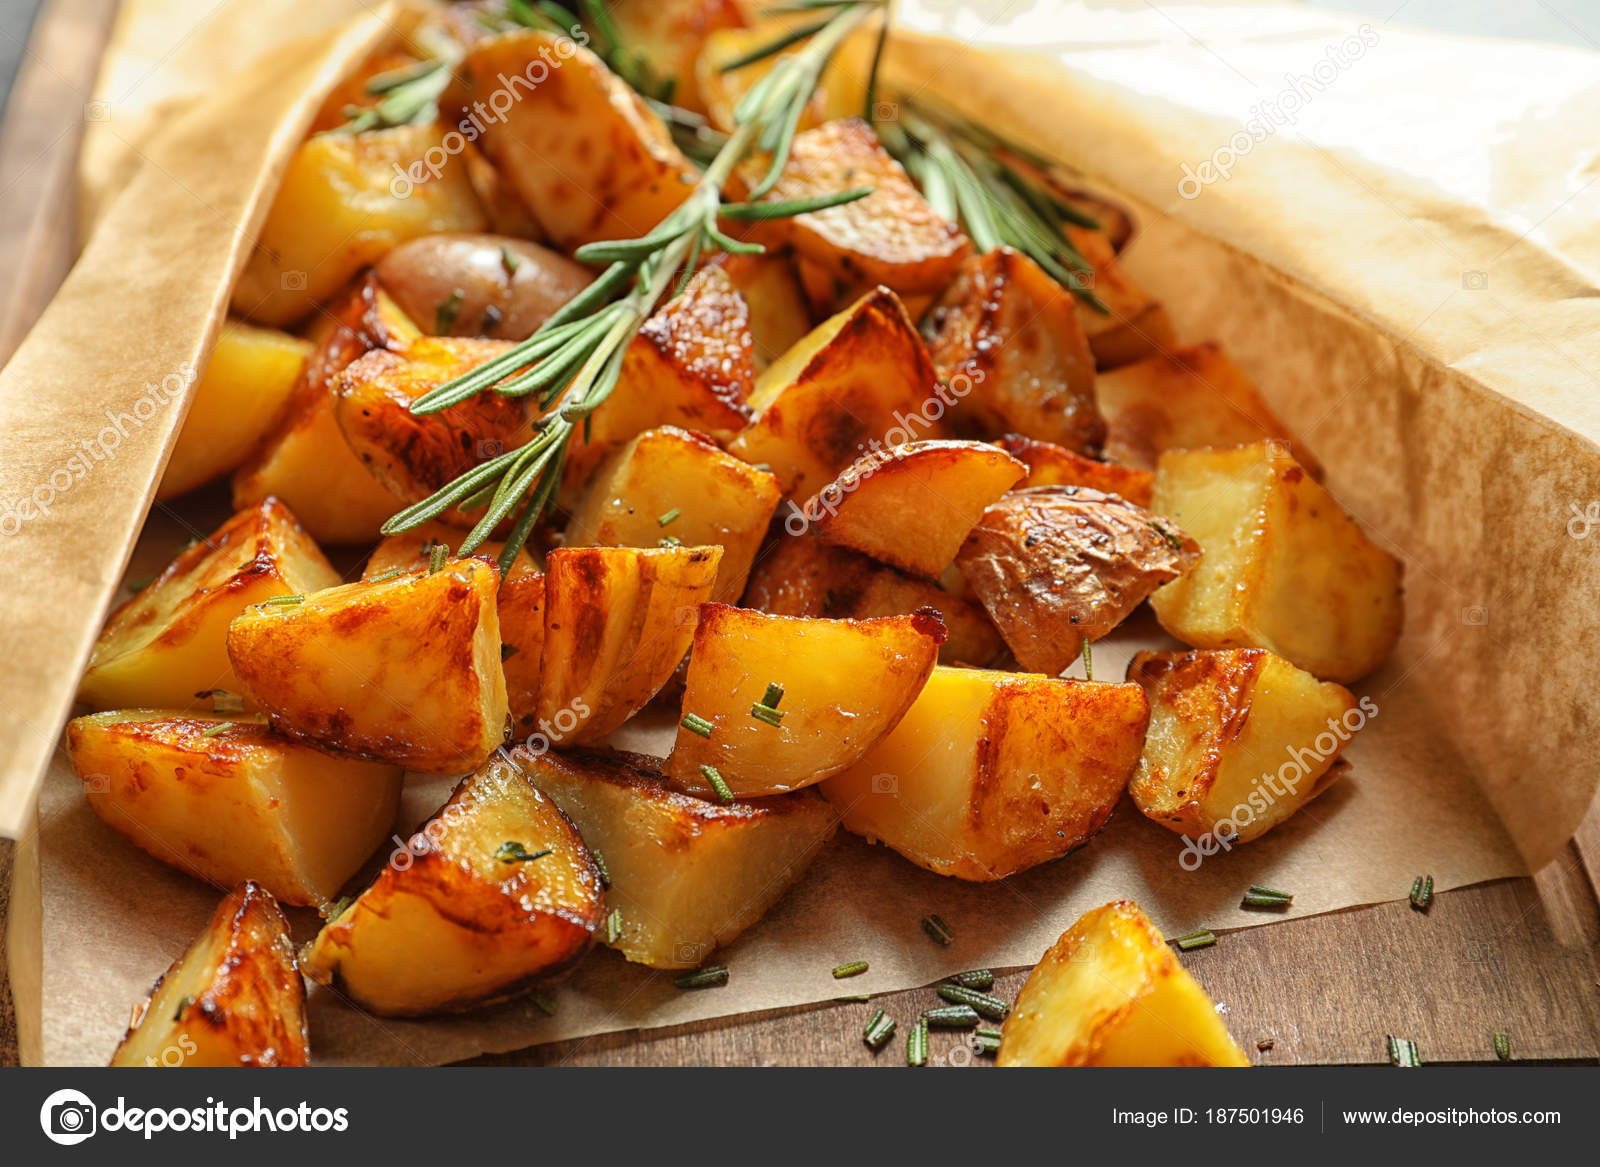 Картофель запеченный в духовке в масле. Картофель в рукаве. Картошка в духовке. Картошка в рукаве в духовке. Картофель запеченный ломтиками.